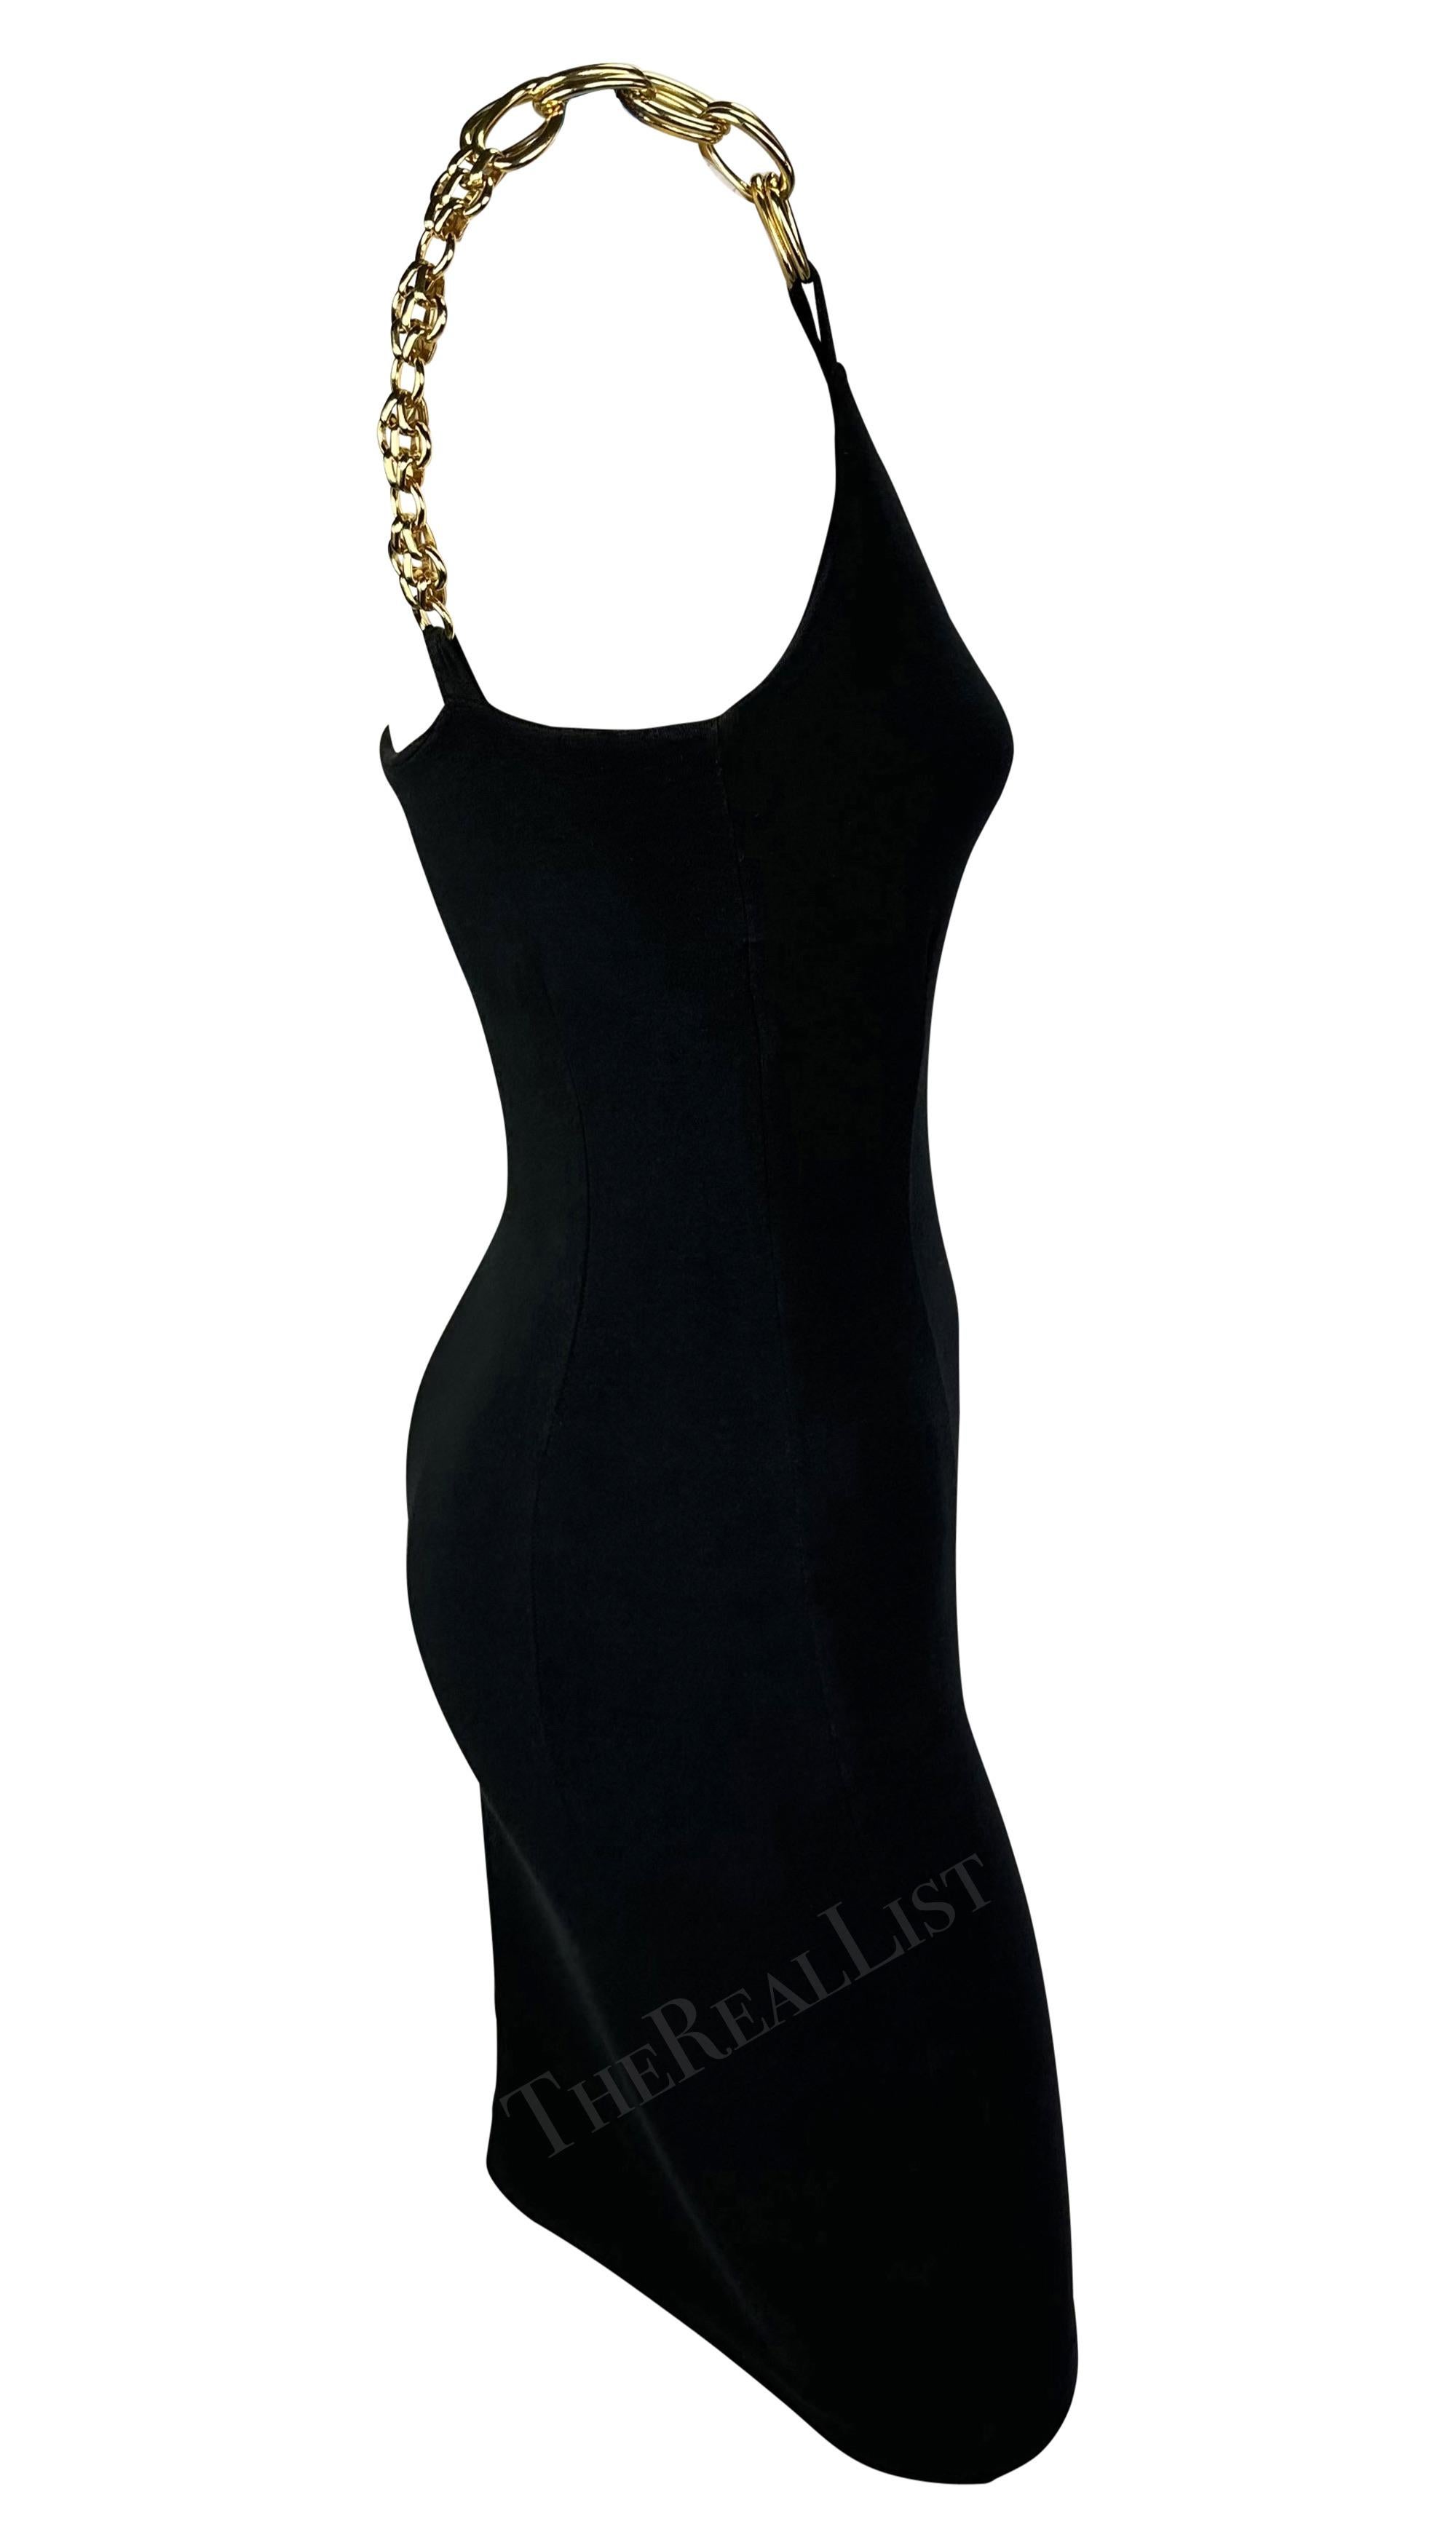 S/S 1991 Dolce & Gabbana Black Bodycon Gold Chain Strap Mini Dress For Sale 4